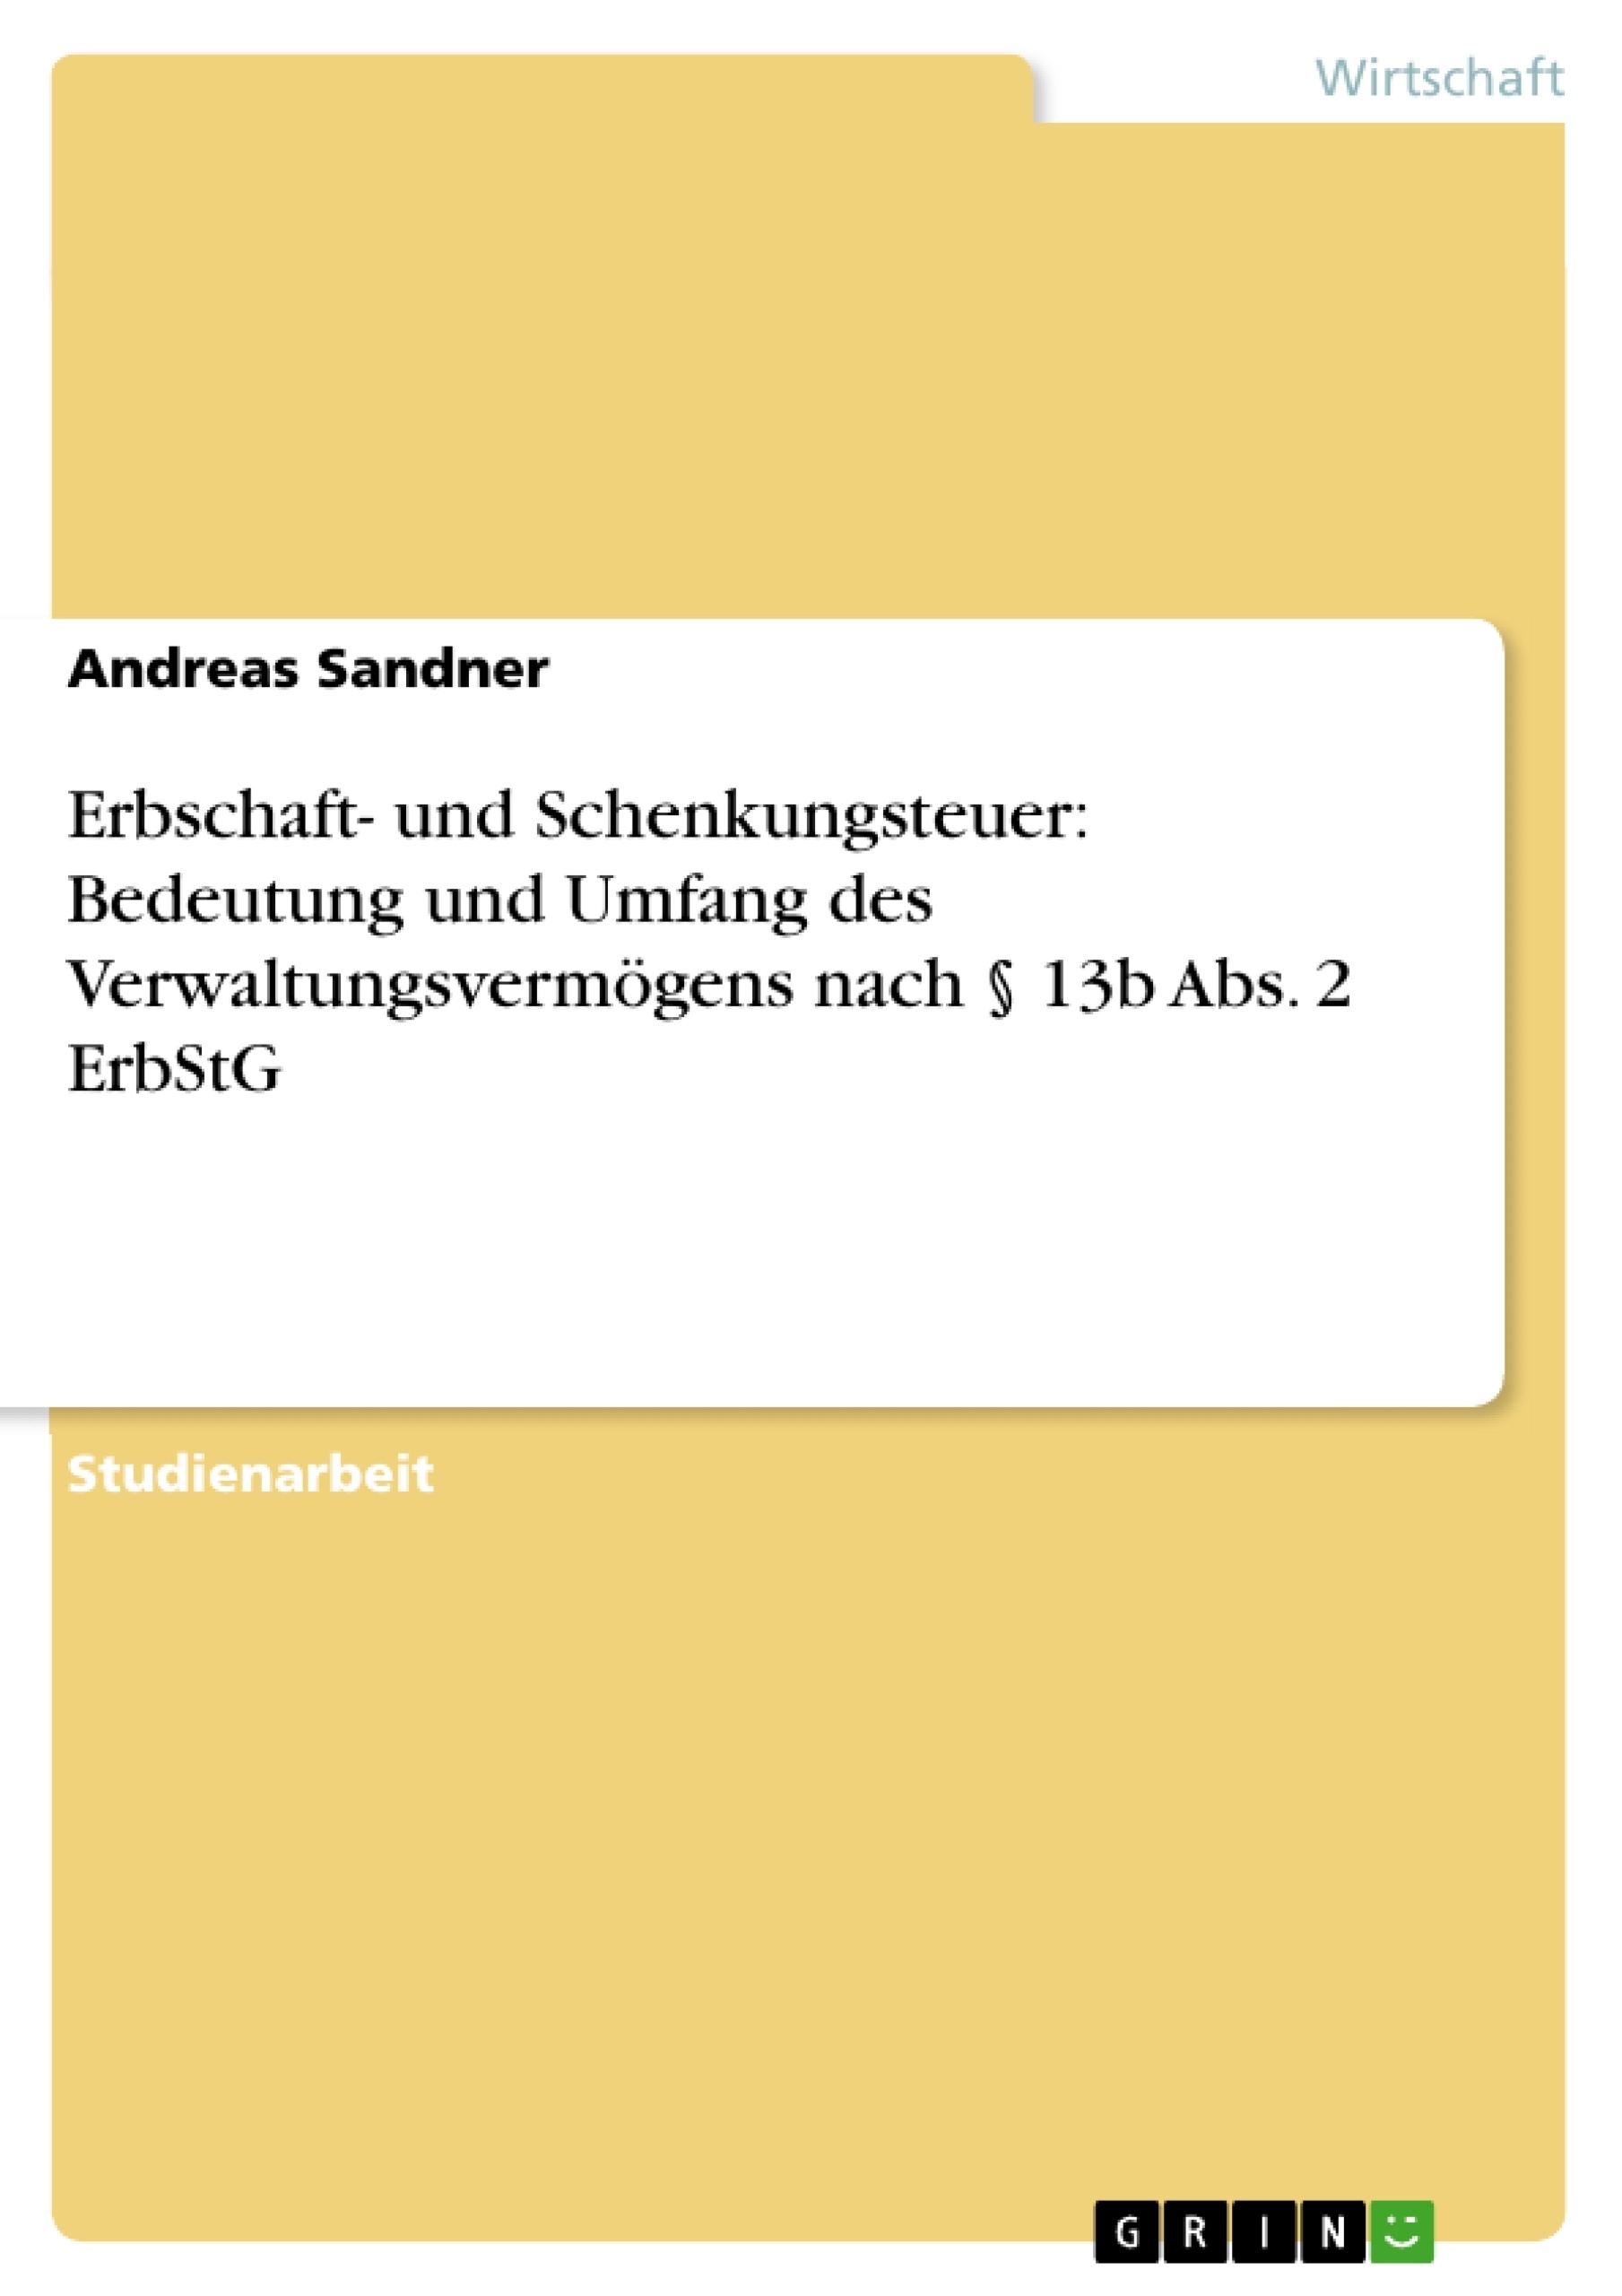 Título: Erbschaft- und Schenkungsteuer: Bedeutung und Umfang des Verwaltungsvermögens nach § 13b Abs. 2 ErbStG